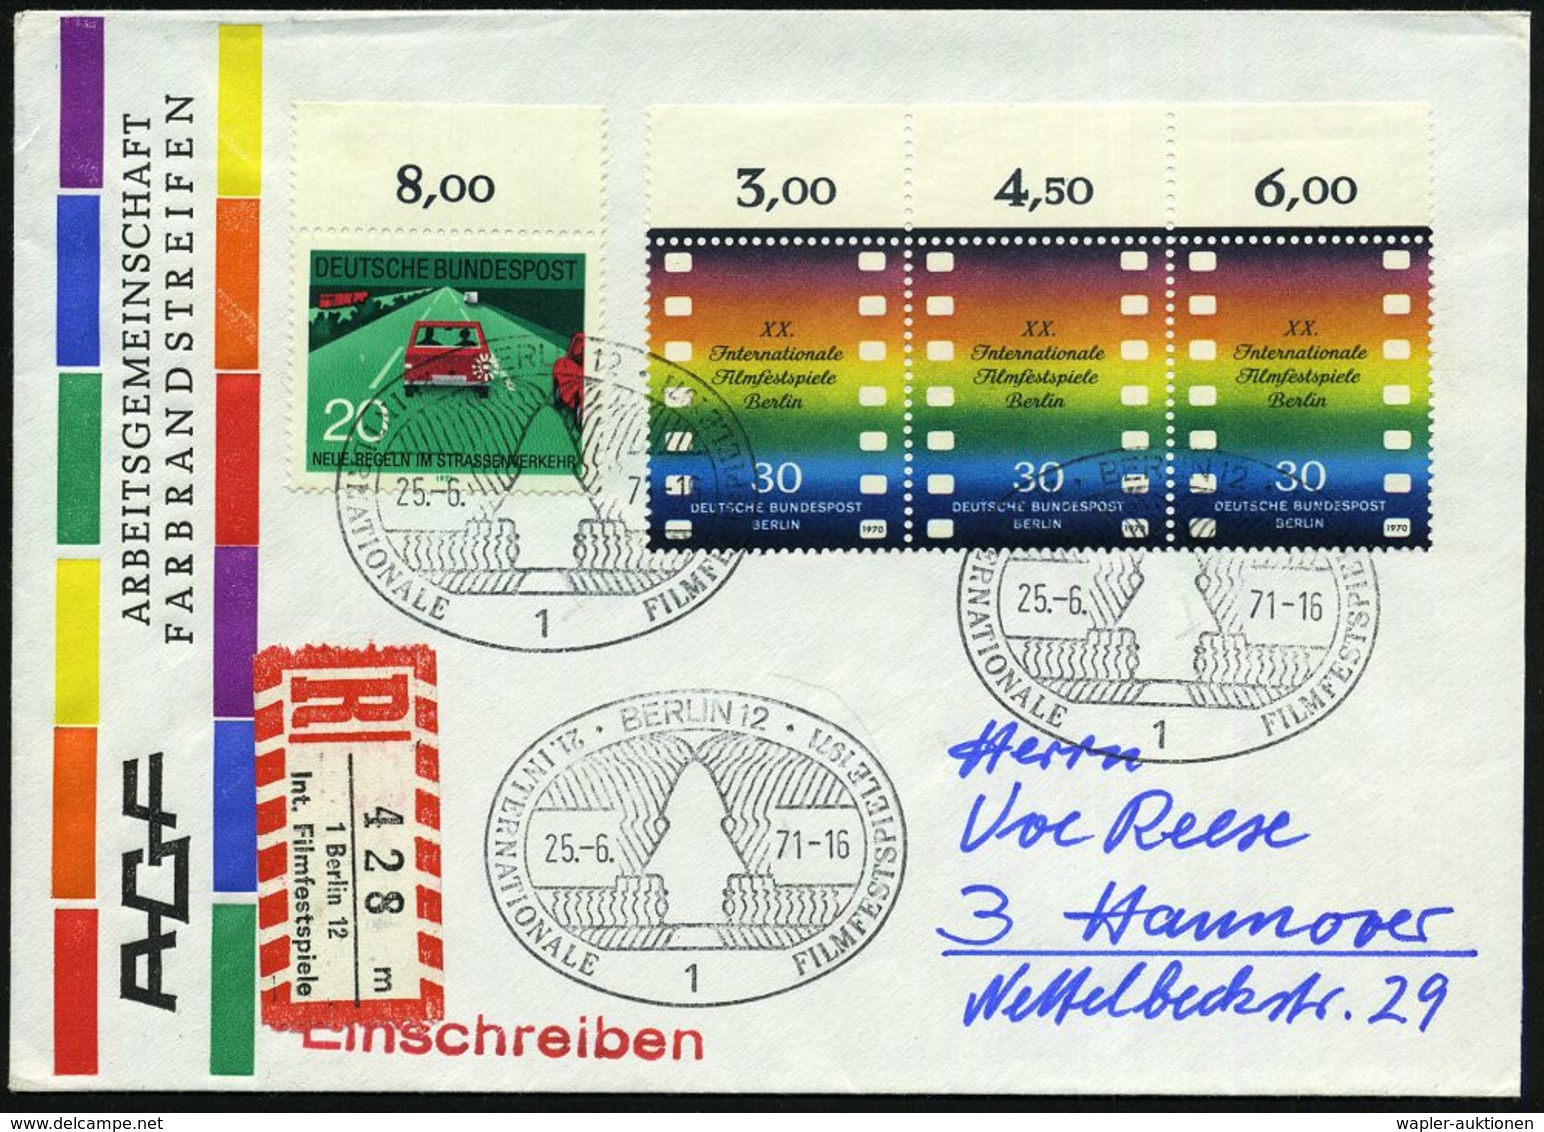 FILMFESTSPIELE / FILMKONGRESSE : 1 BERLIN 12/ 21.INTERNAT.FILMFESTSPIELE 1971 (25.6.) SSt Auf Rand-3er-Streifen 30 Pf. F - Kino